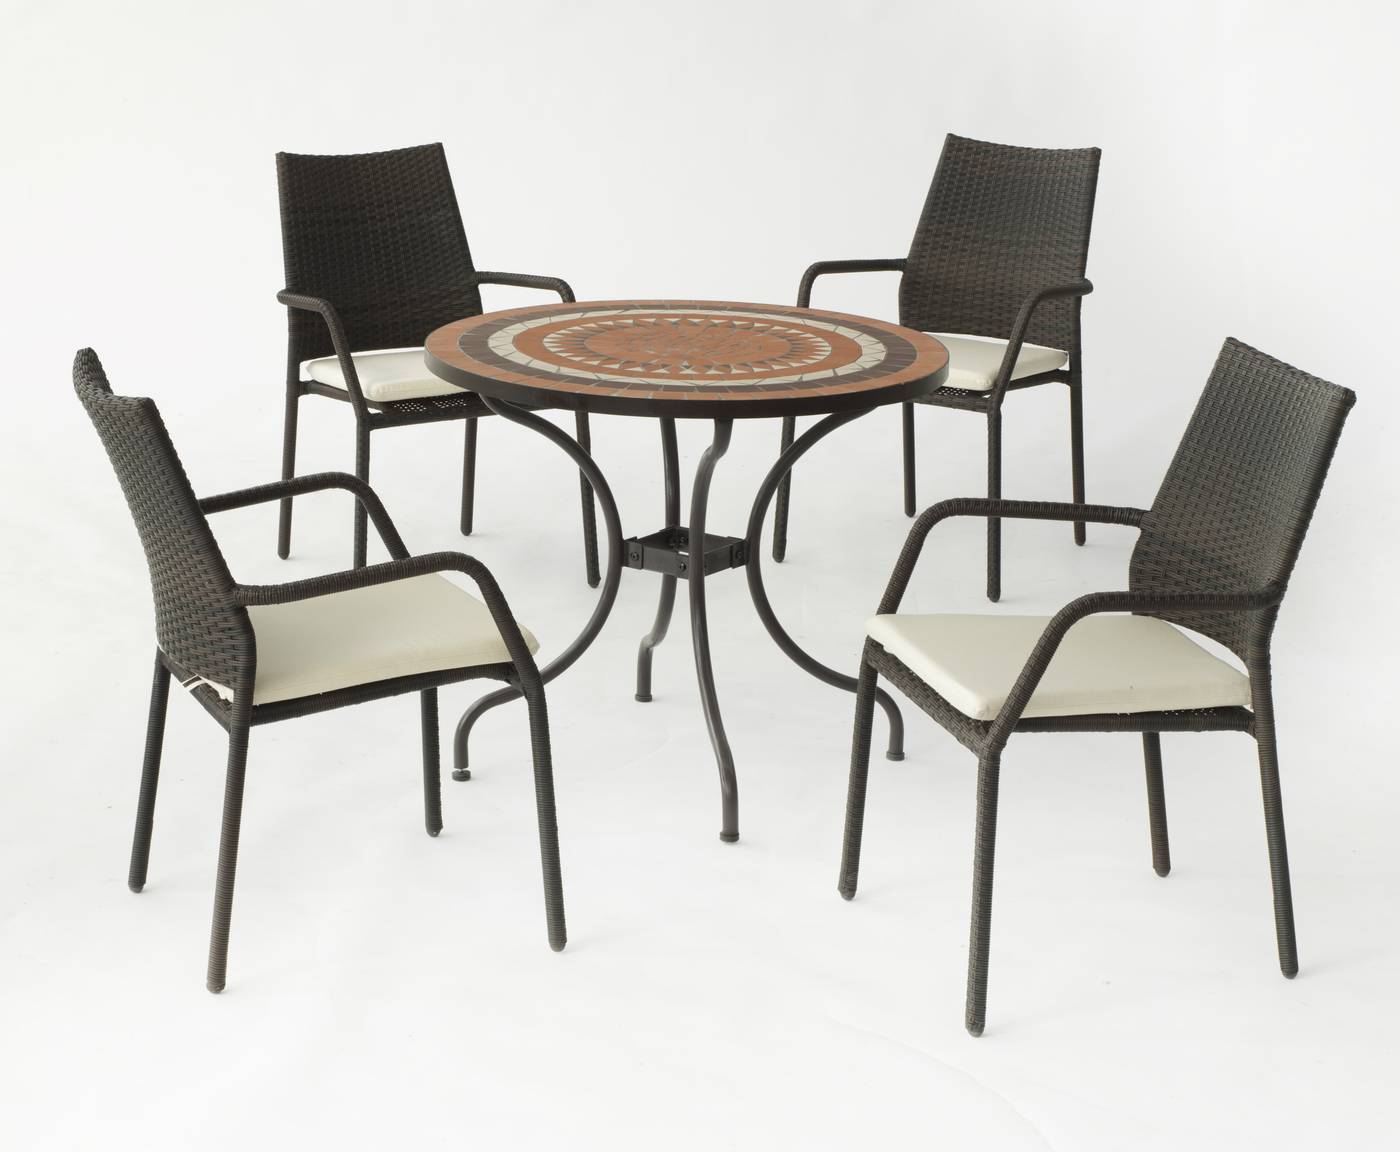 Mesa redonda de acero forjado, con tablero mosaico de 90 cm. y 4 sillones de ratán sintético